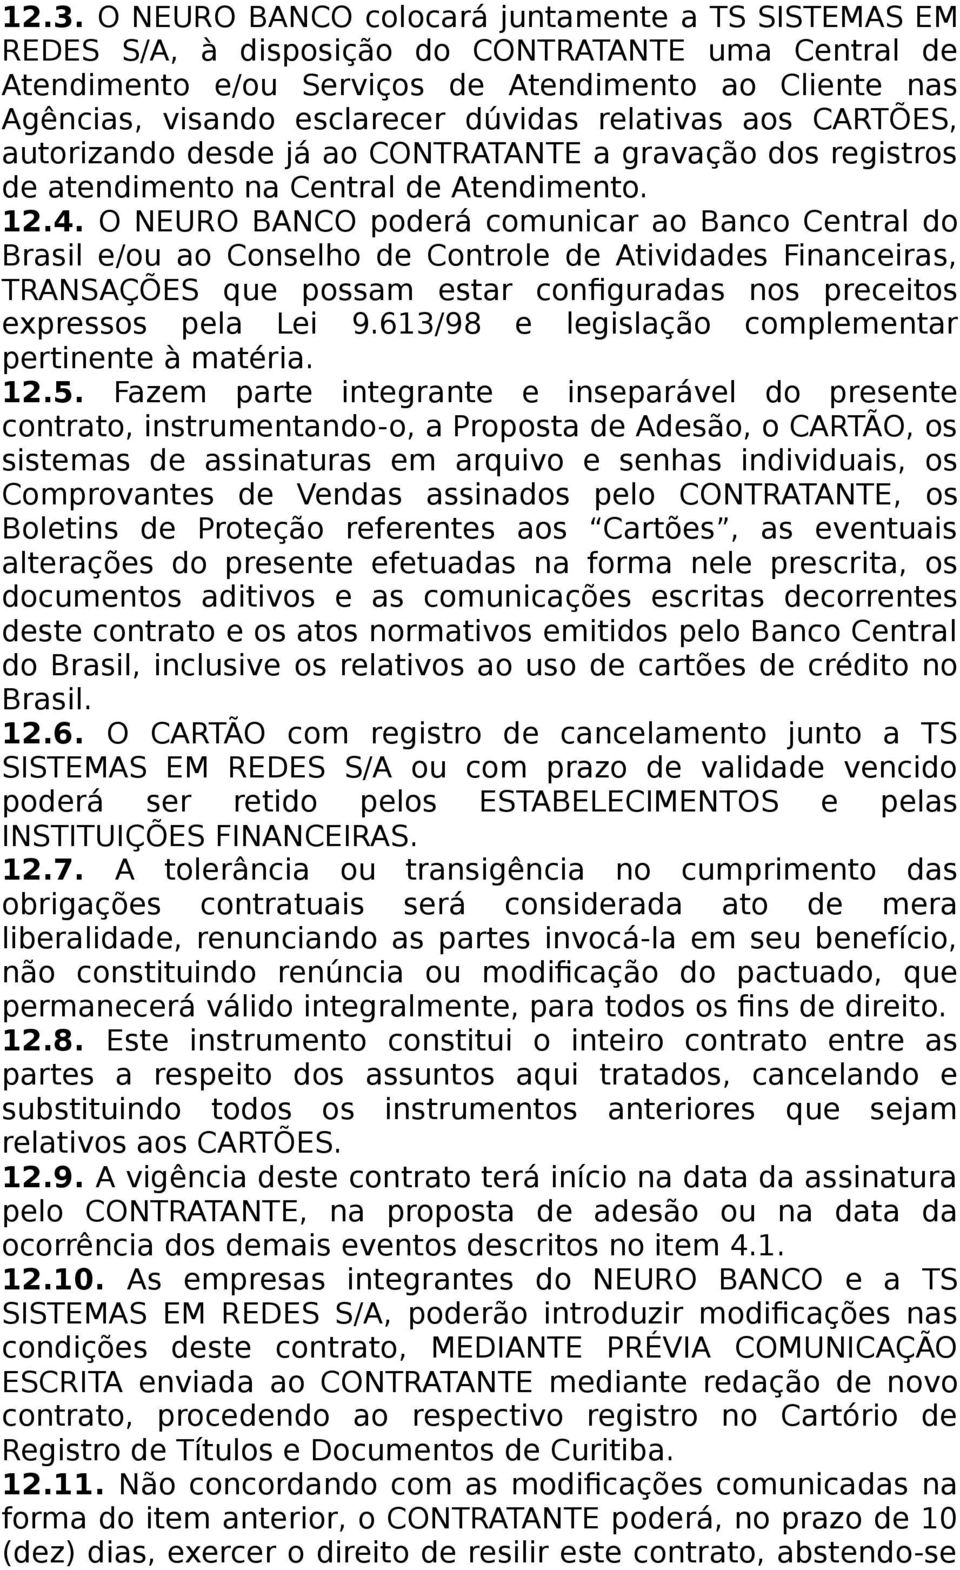 O NEURO BANCO poderá comunicar ao Banco Central do Brasil e/ou ao Conselho de Controle de Atividades Financeiras, TRANSAÇÕES que possam estar configuradas nos preceitos expressos pela Lei 9.